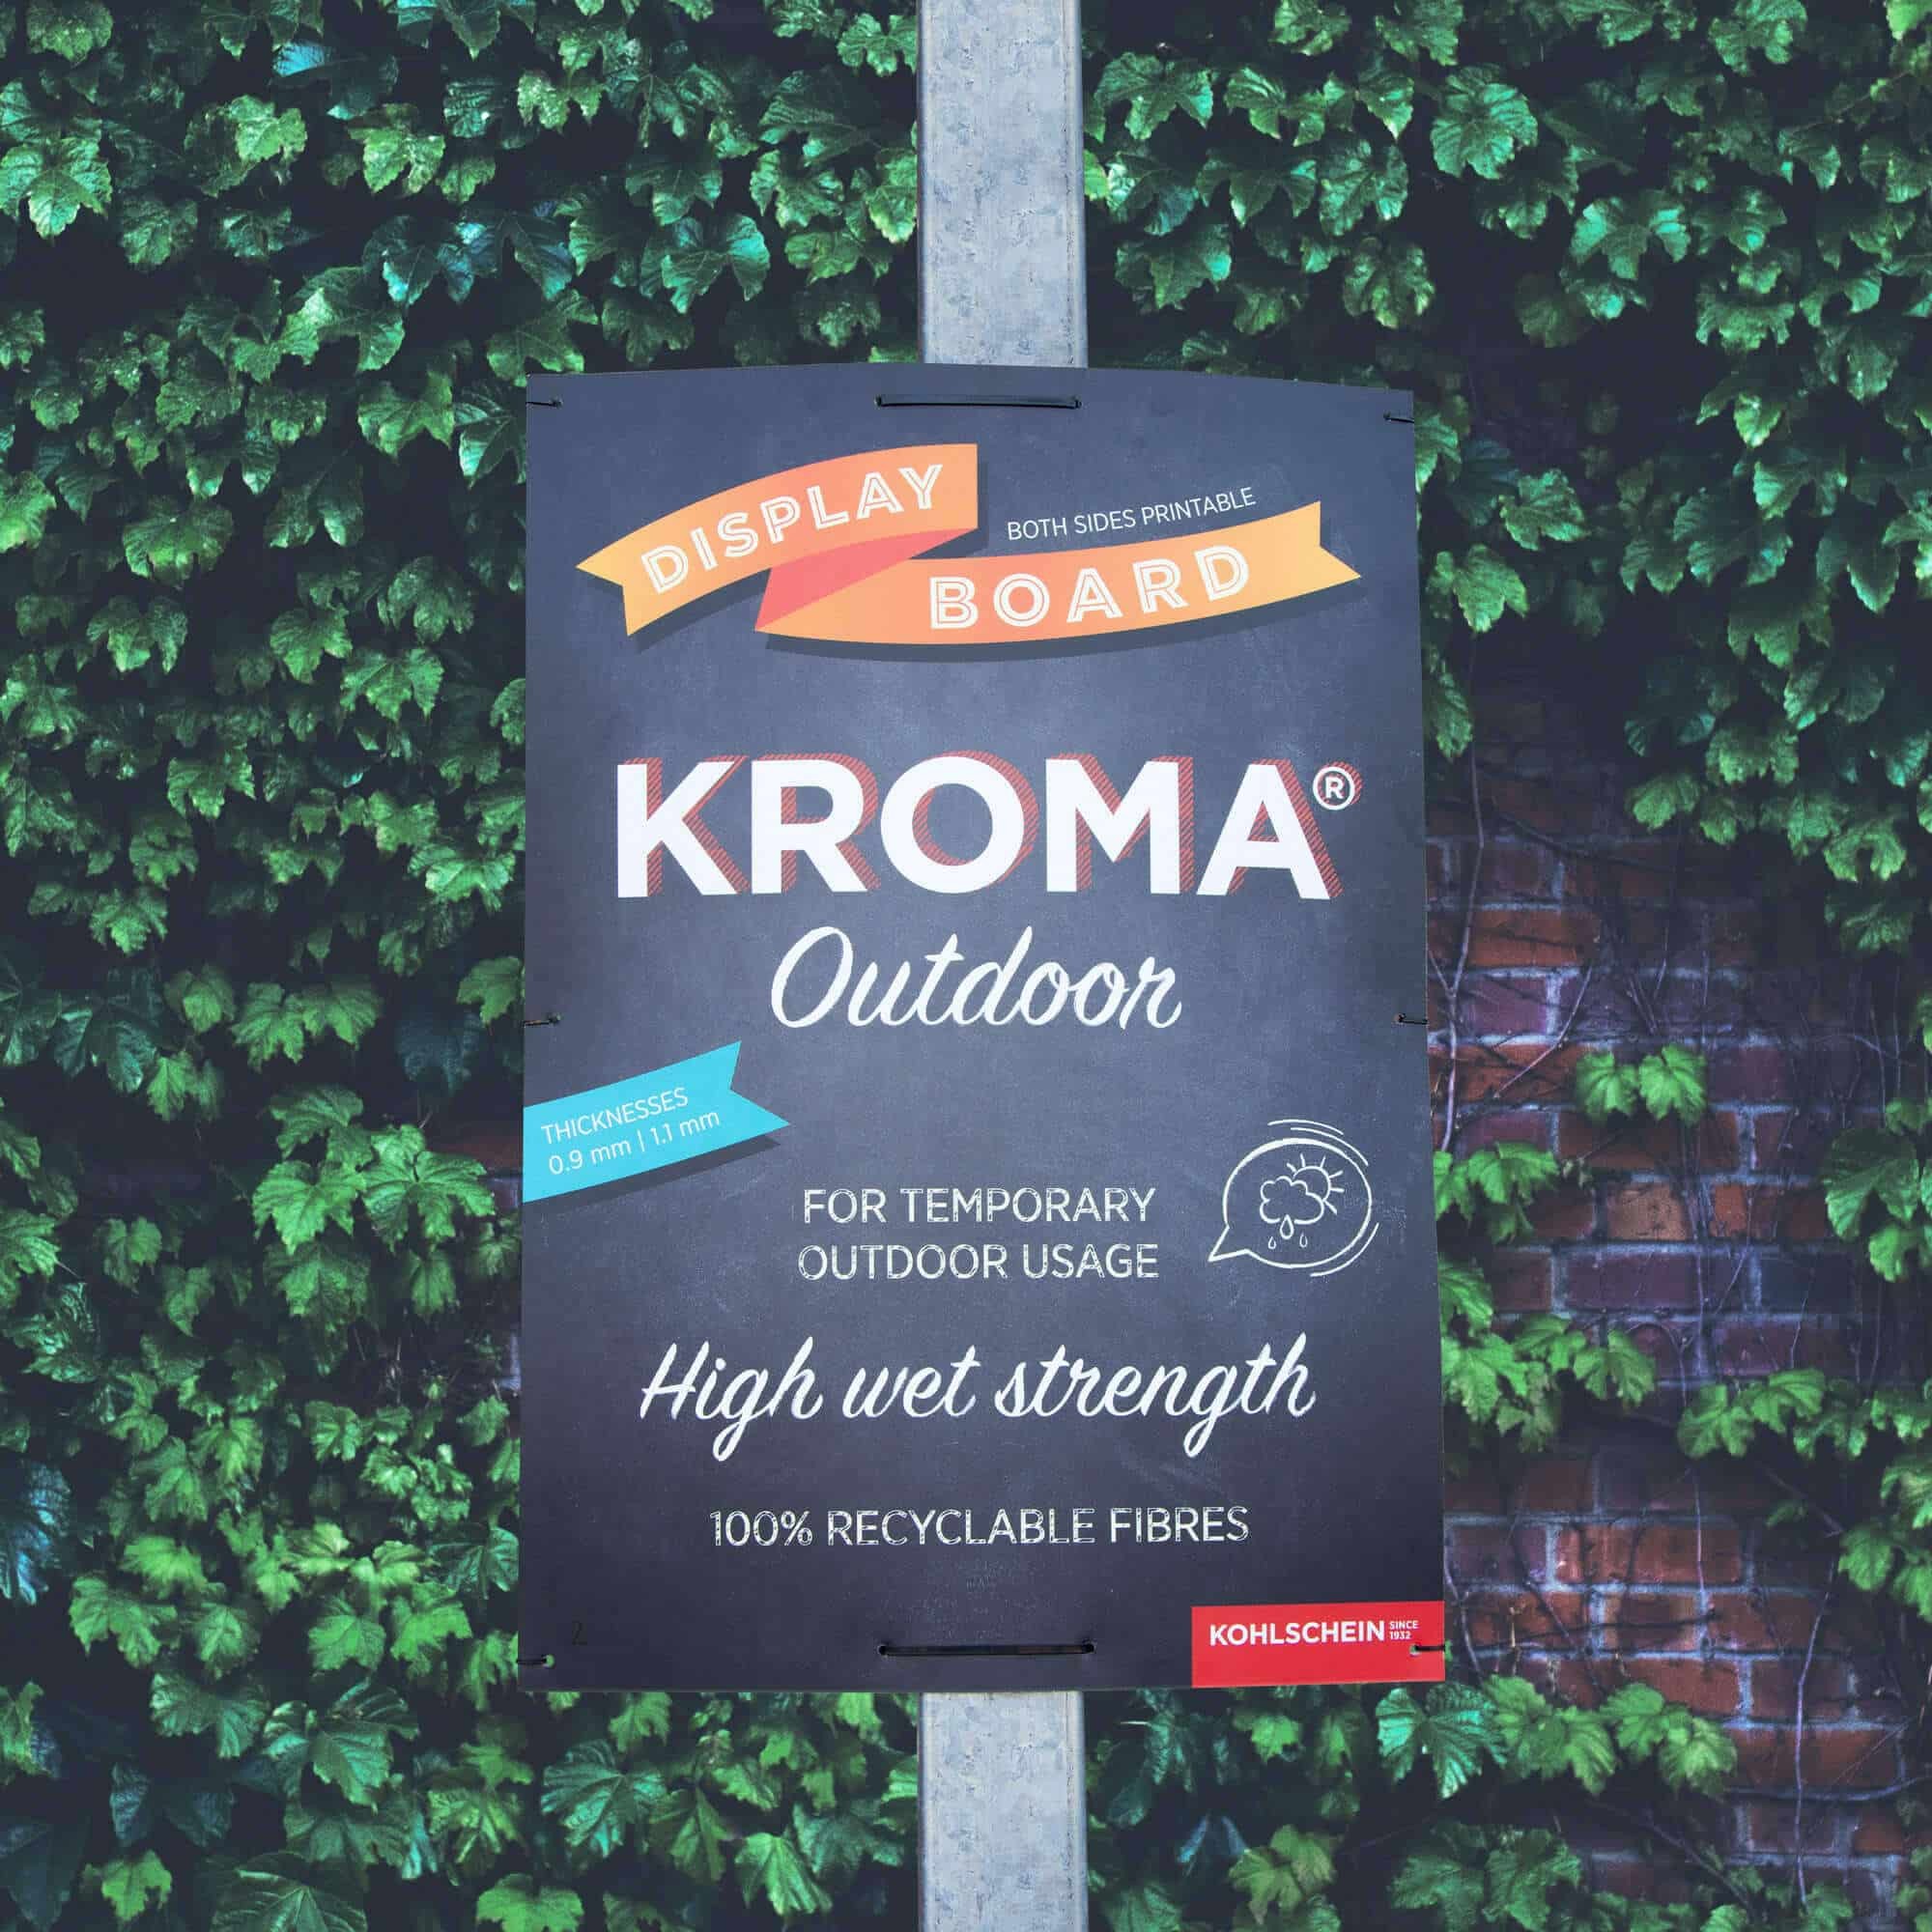 Schilder / Plakat aus KROMA Outdoor